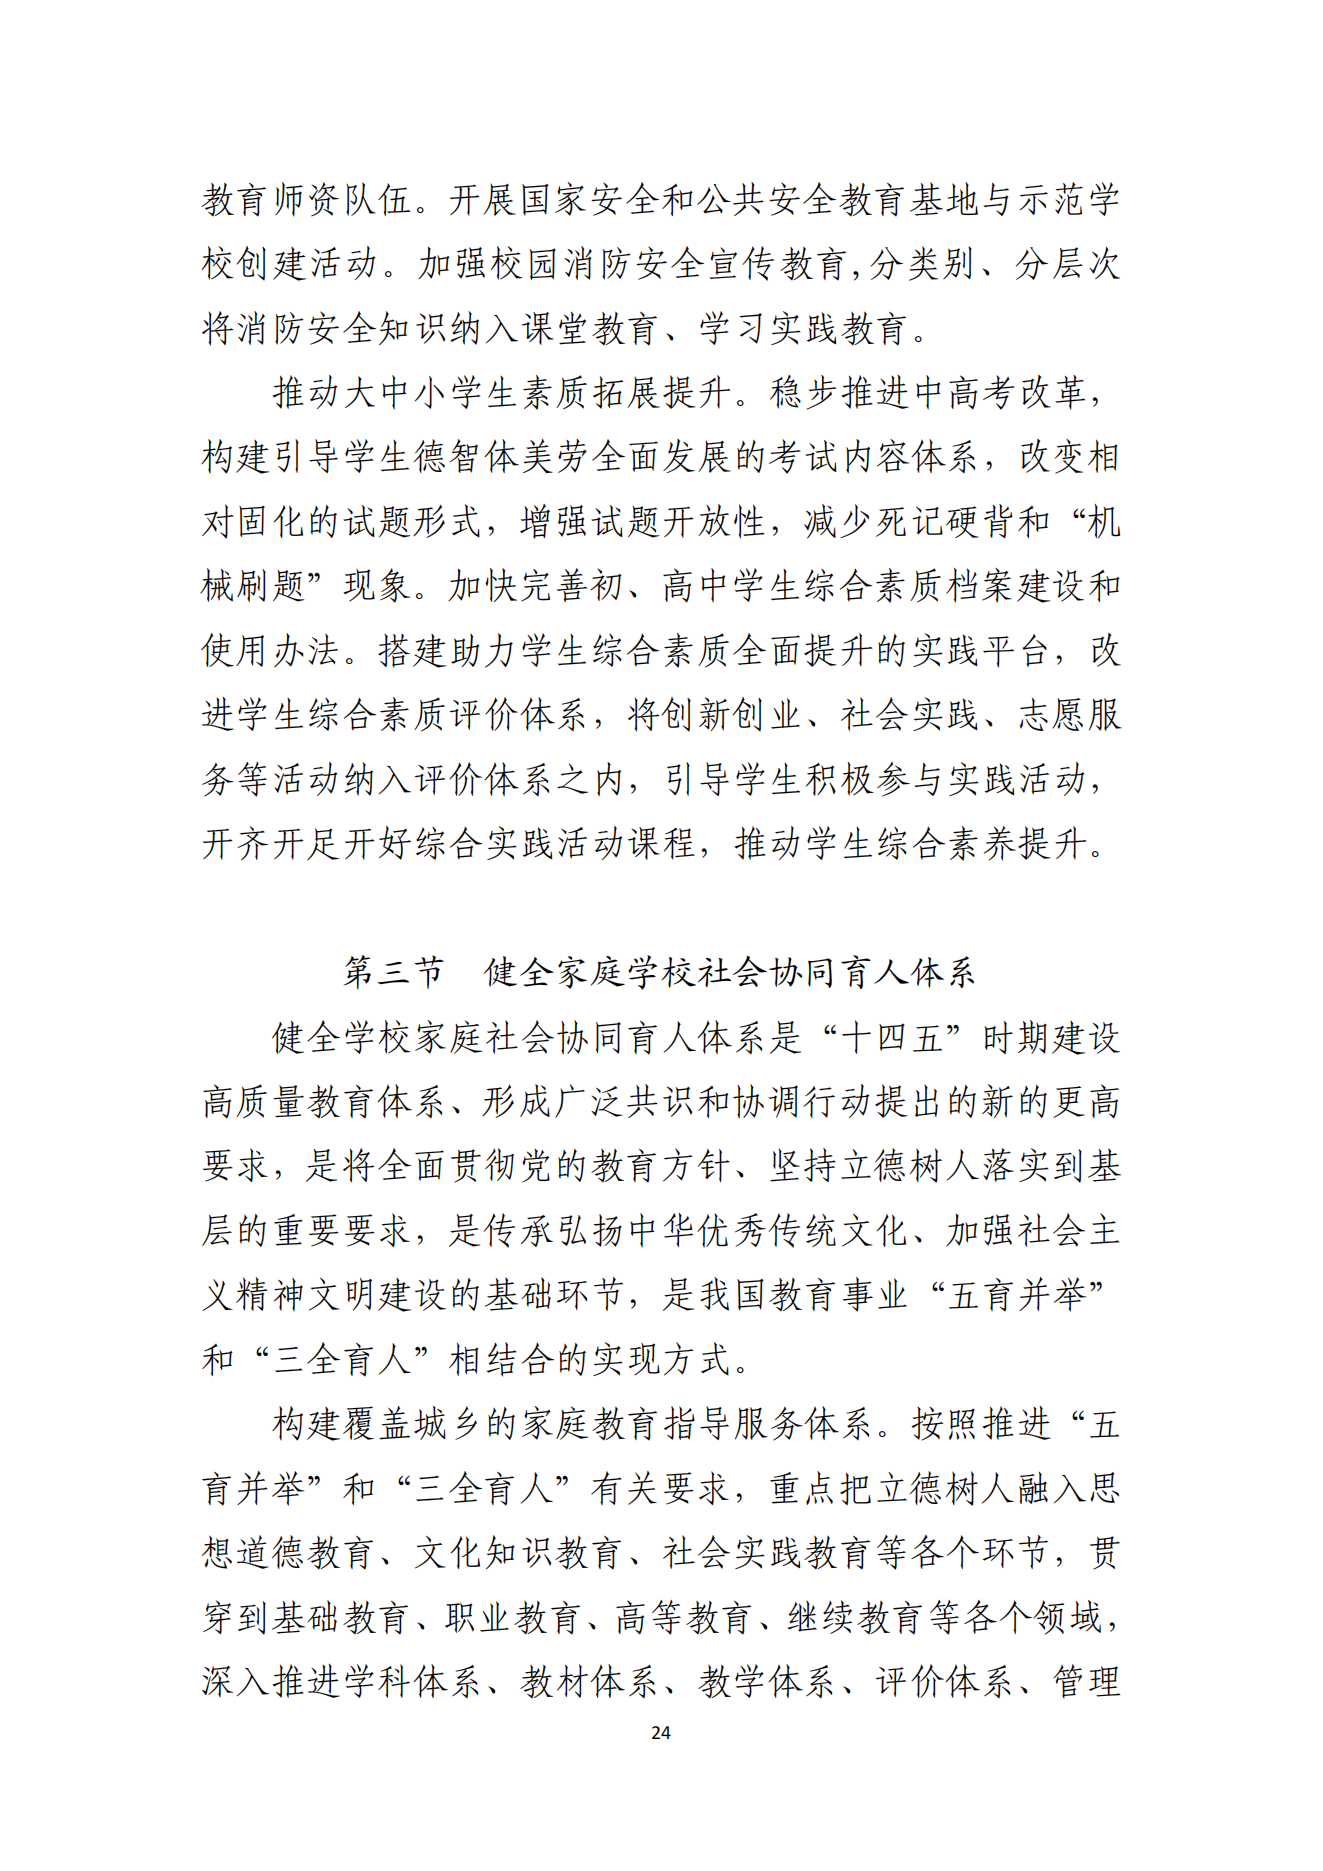 湛江市人民政府办公室关于印发湛江市教育发展“十四五”规划的通知_23.png